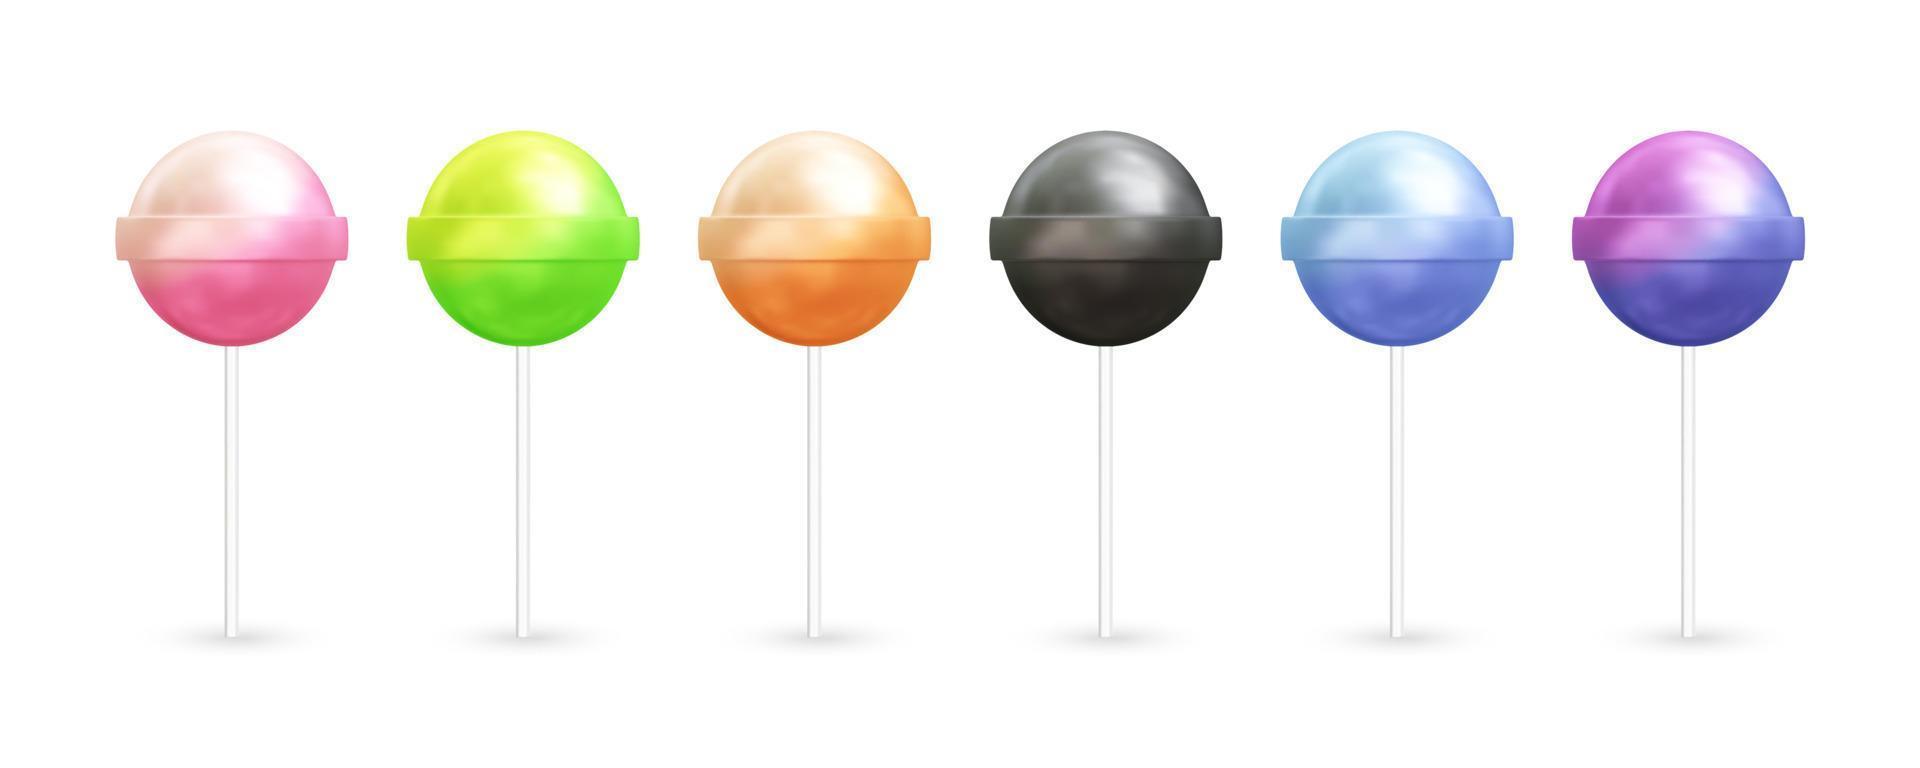 lolly snoep realistische 3d vector pictogram illustratie met verschillende kleuren